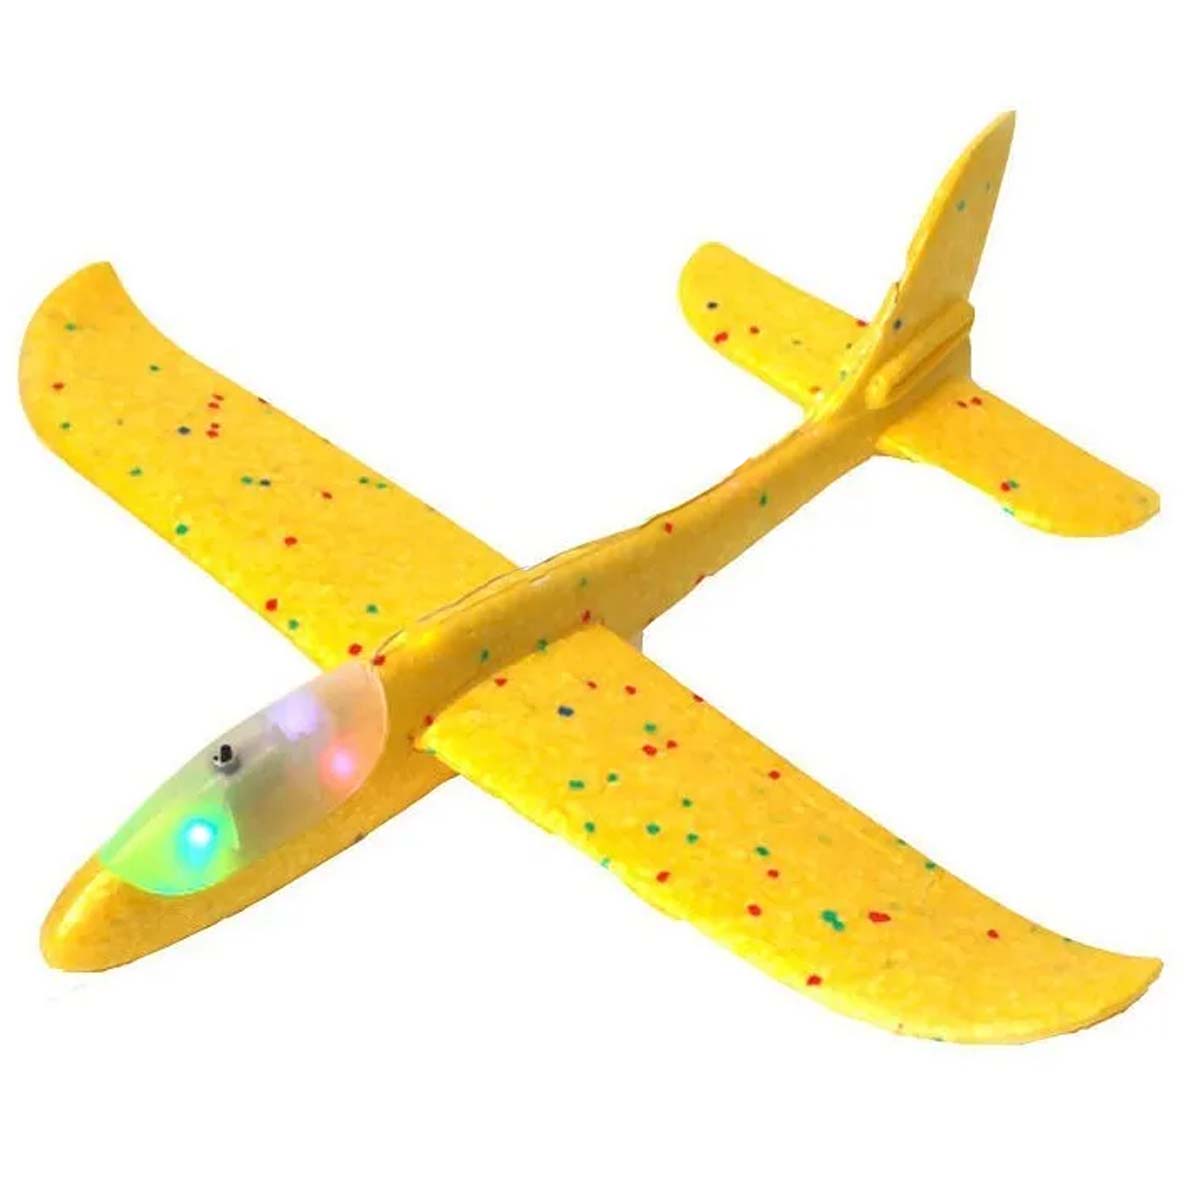 Метательный самолет из пенопласта, 45 см, LED подсветка кабины, цвет желтый